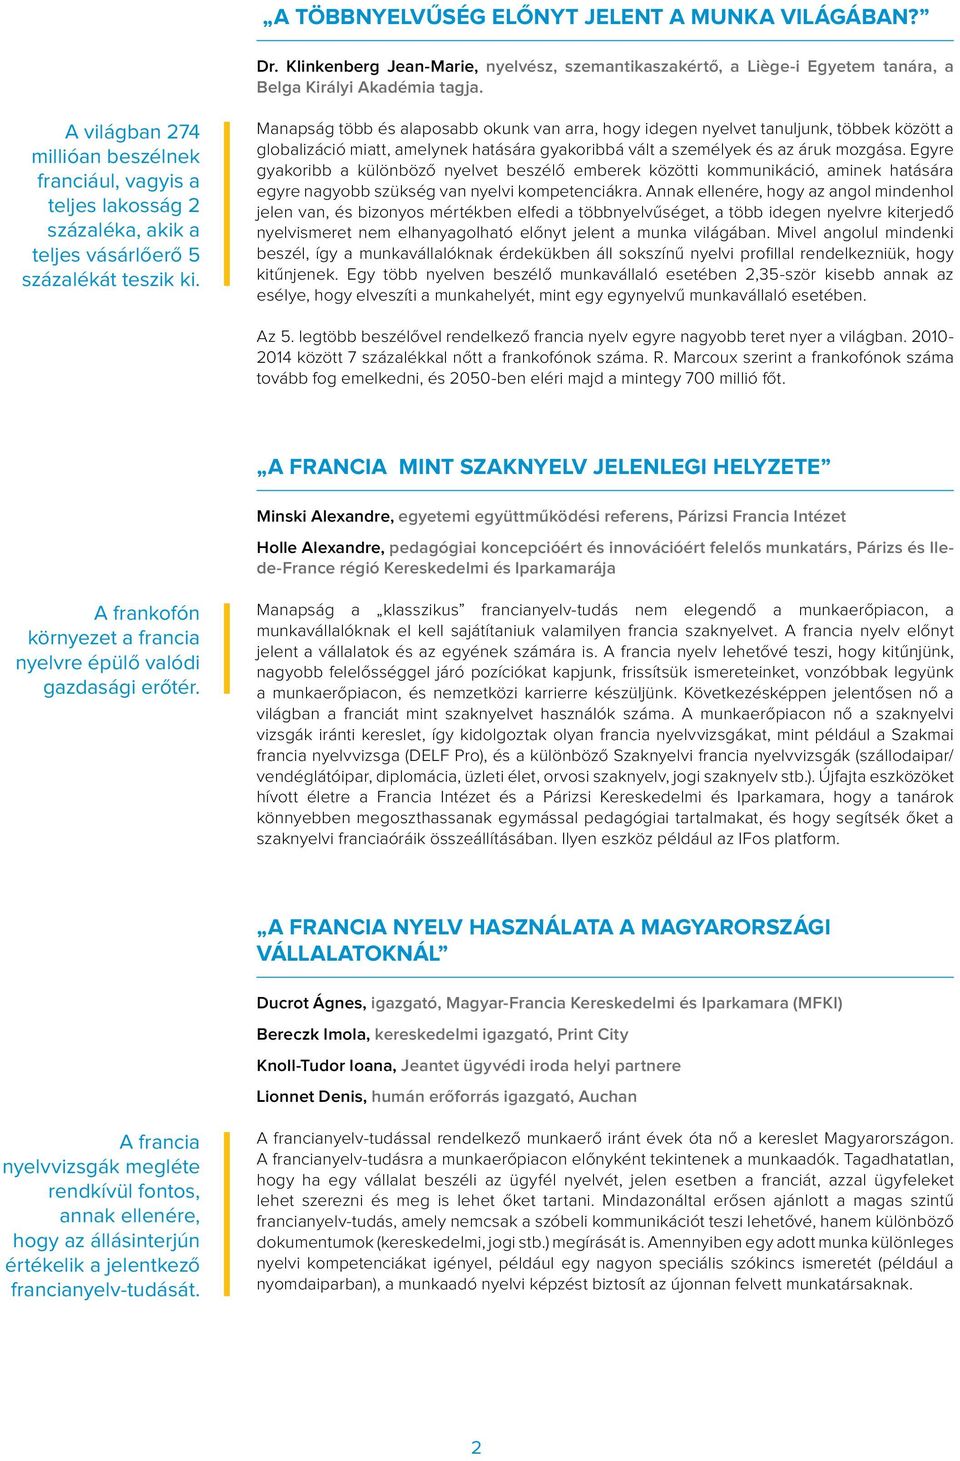 A FRANCIA MINT A MUNKA NYELVE C. FÓRUM ÖSSZEGZÉSE - PDF Free Download